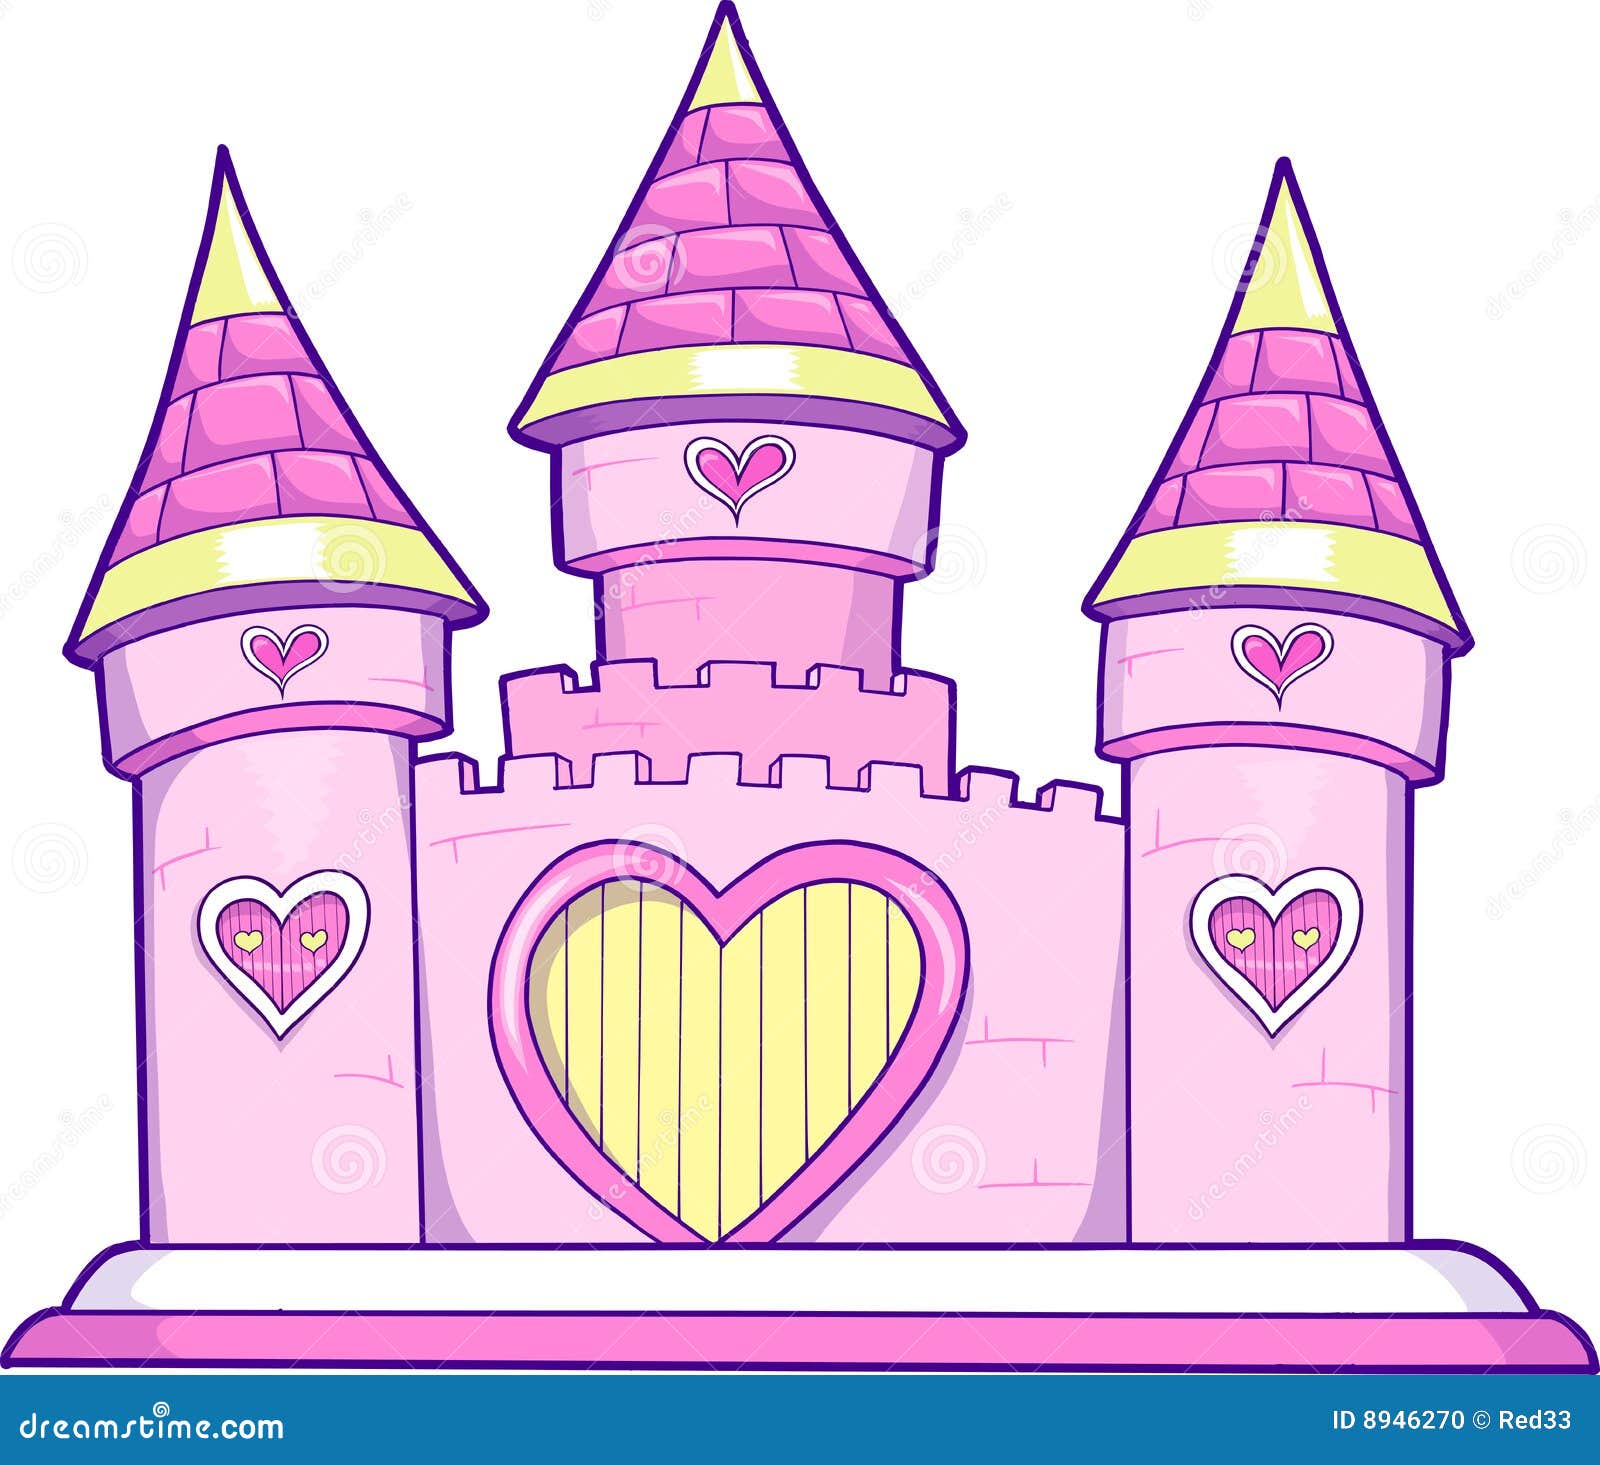 princess castle clip art - photo #35